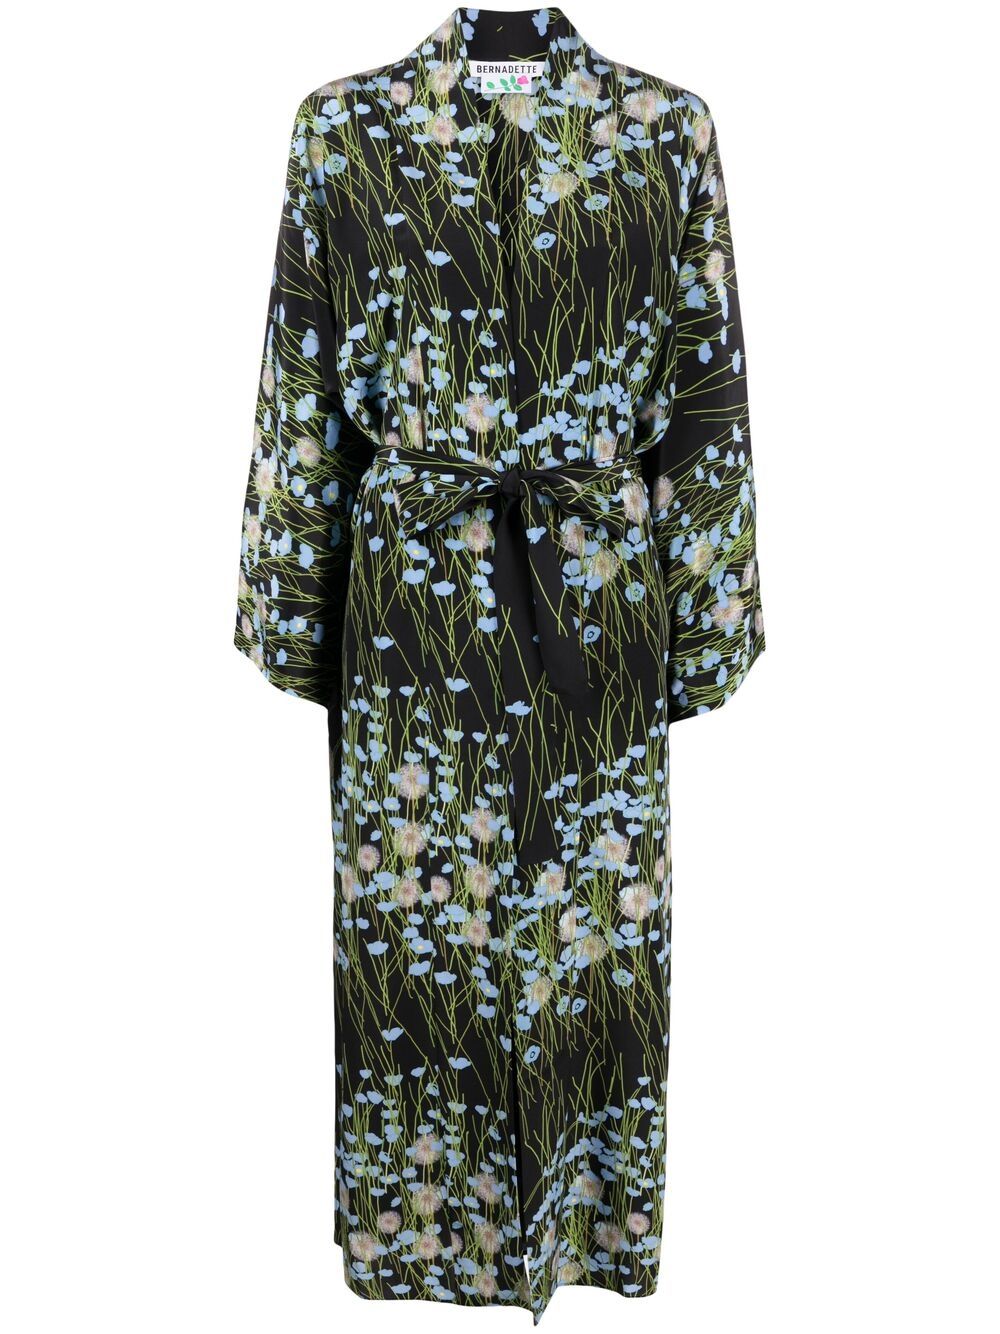 фото Bernadette платье peignoir с запахом и цветочным принтом